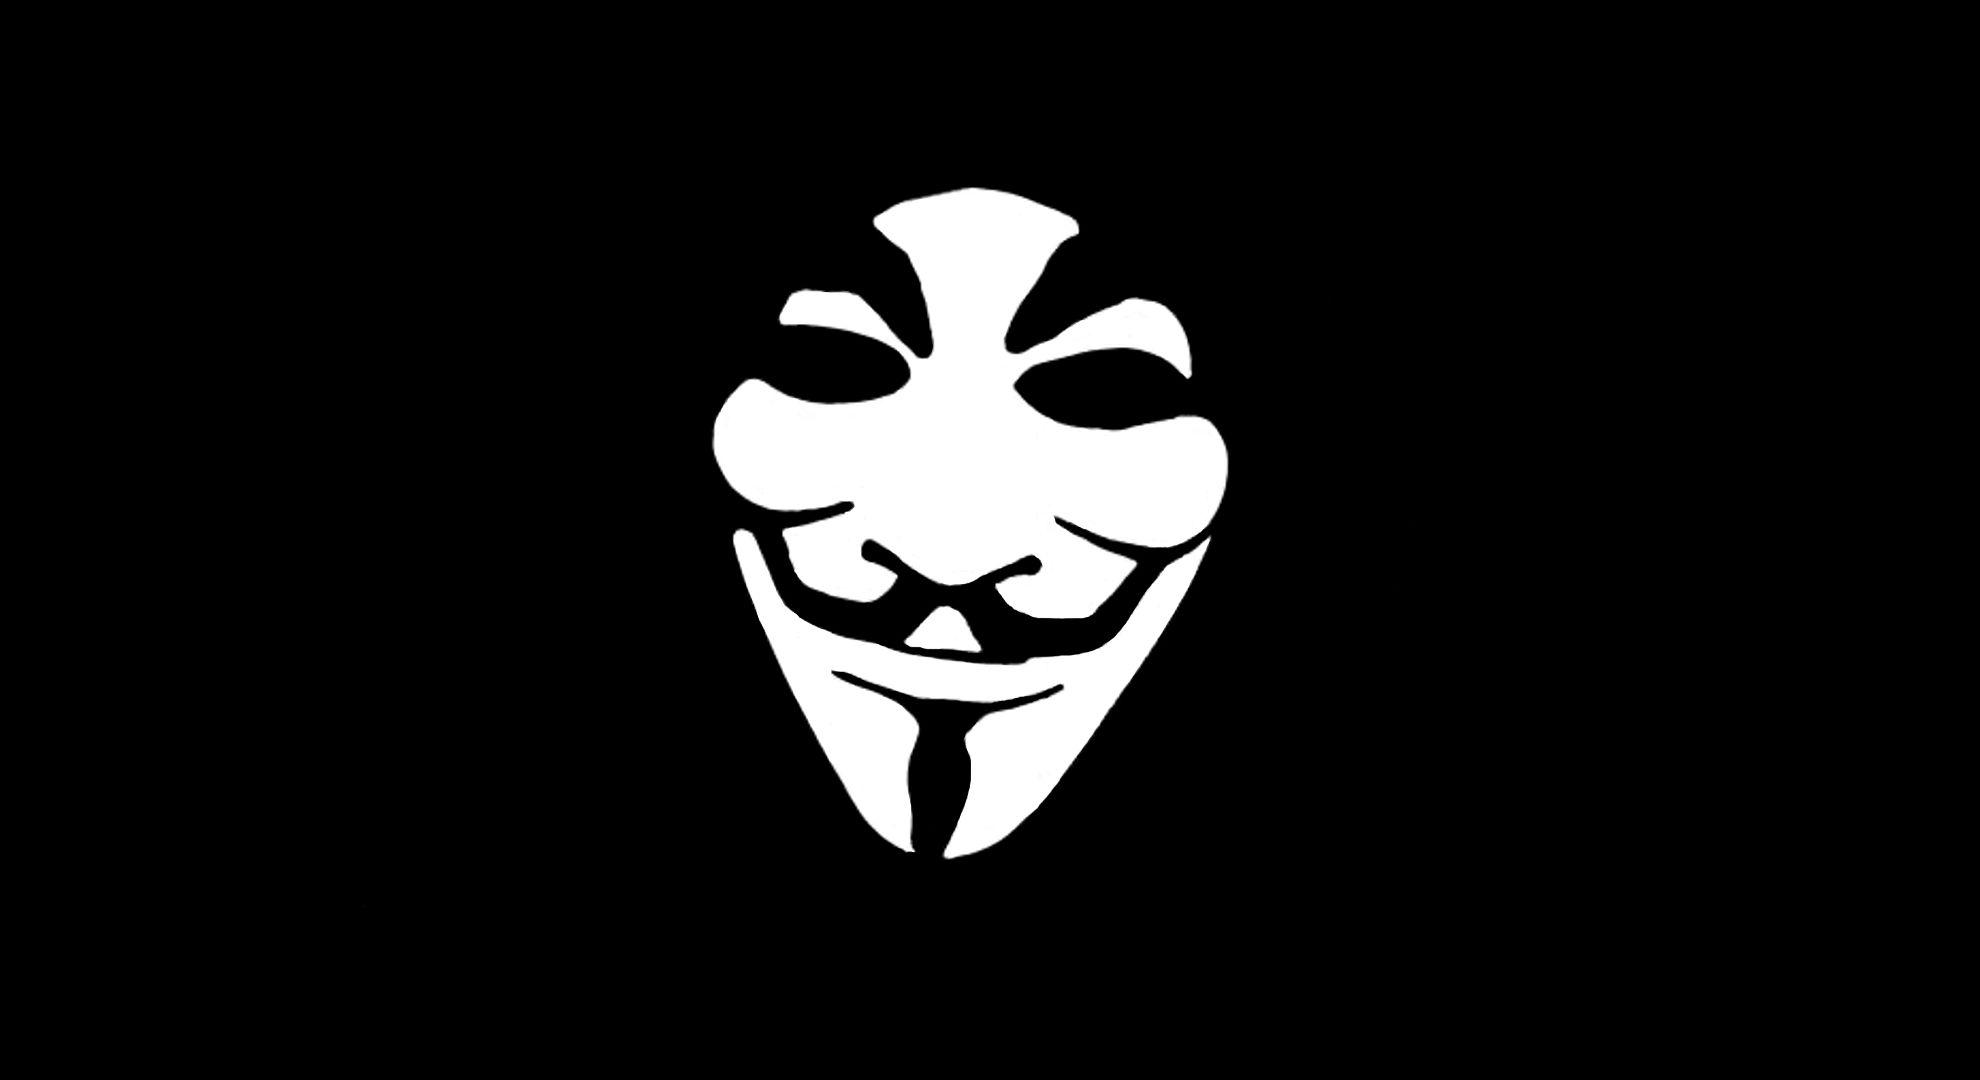 Anonymous Wallpapers - Top Những Hình Ảnh Đẹp